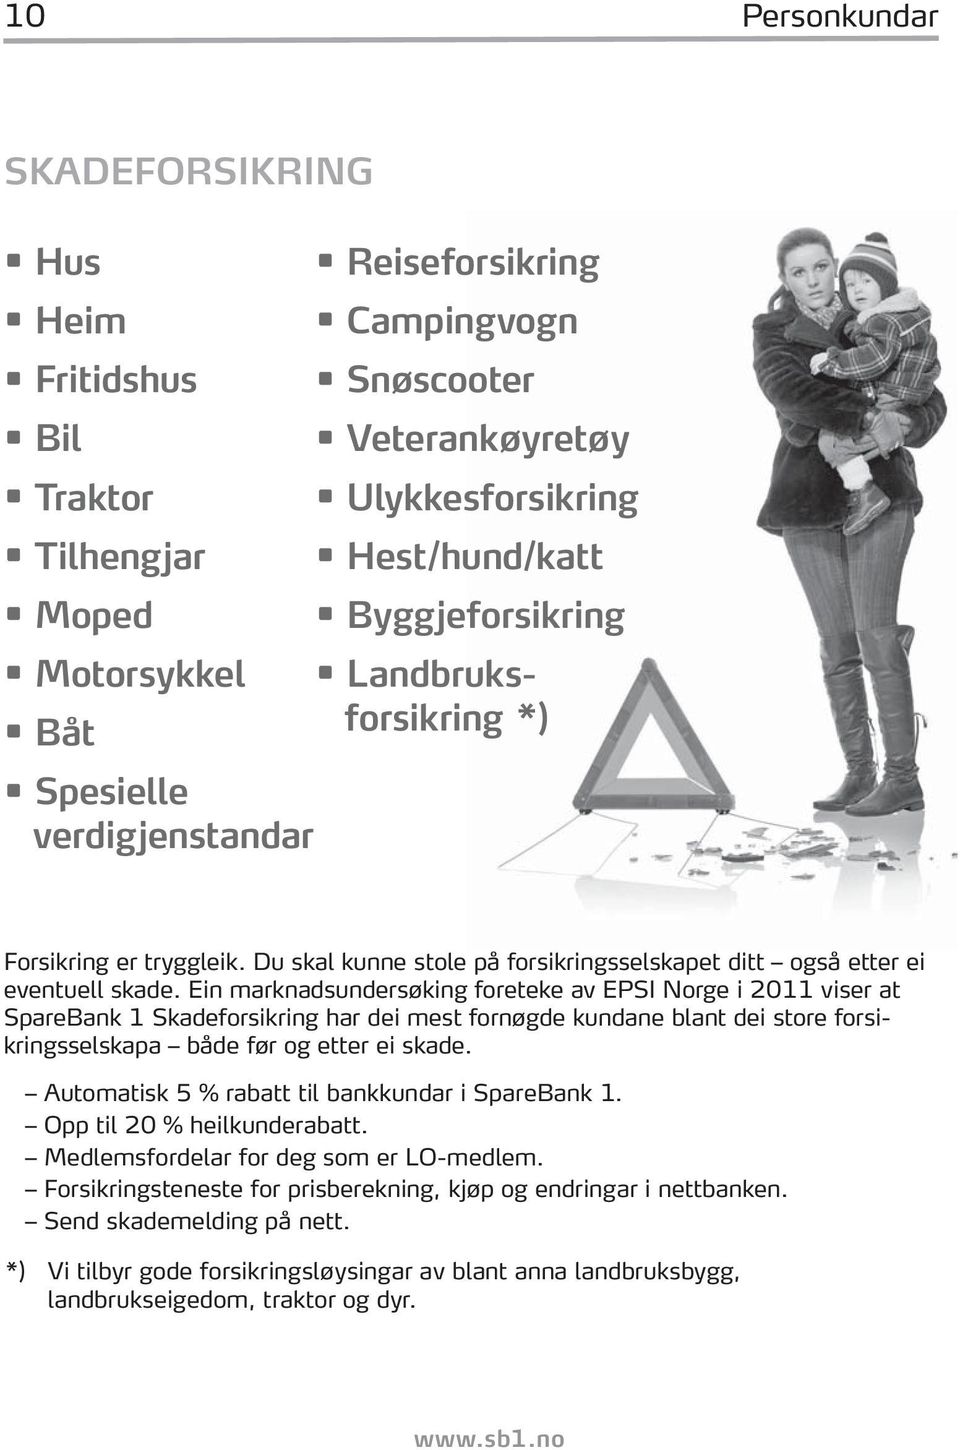 Ein marknadsundersøking foreteke av EPSI Norge i 2011 viser at SpareBank 1 Skadeforsikring har dei mest fornøgde kundane blant dei store forsikringsselskapa både før og etter ei skade.